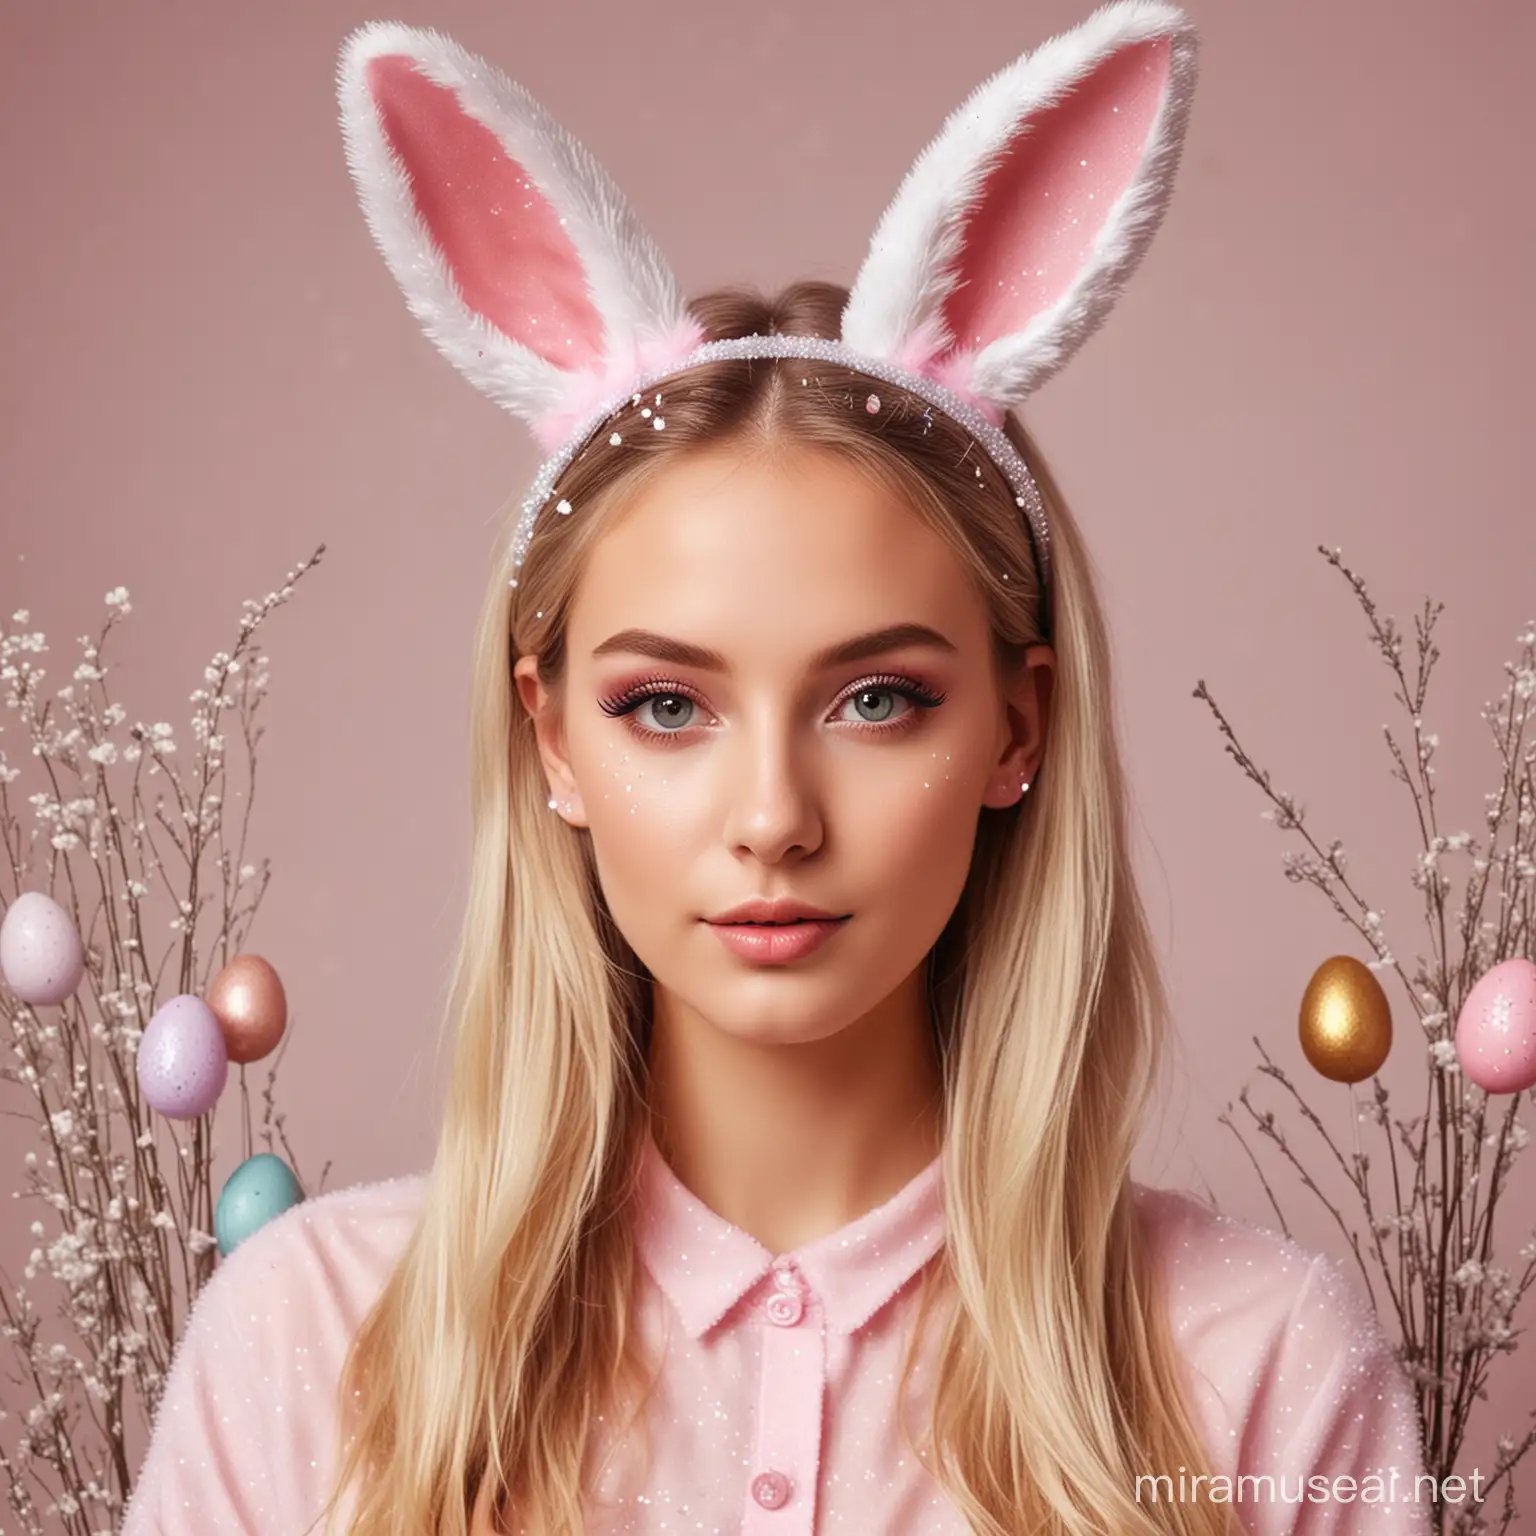 Crea foto di modella con le orecchie a forma di coniglio glitterate, baffi da coniglio, truccata alla moda, realistica, sullo sfondo uova di pasqua